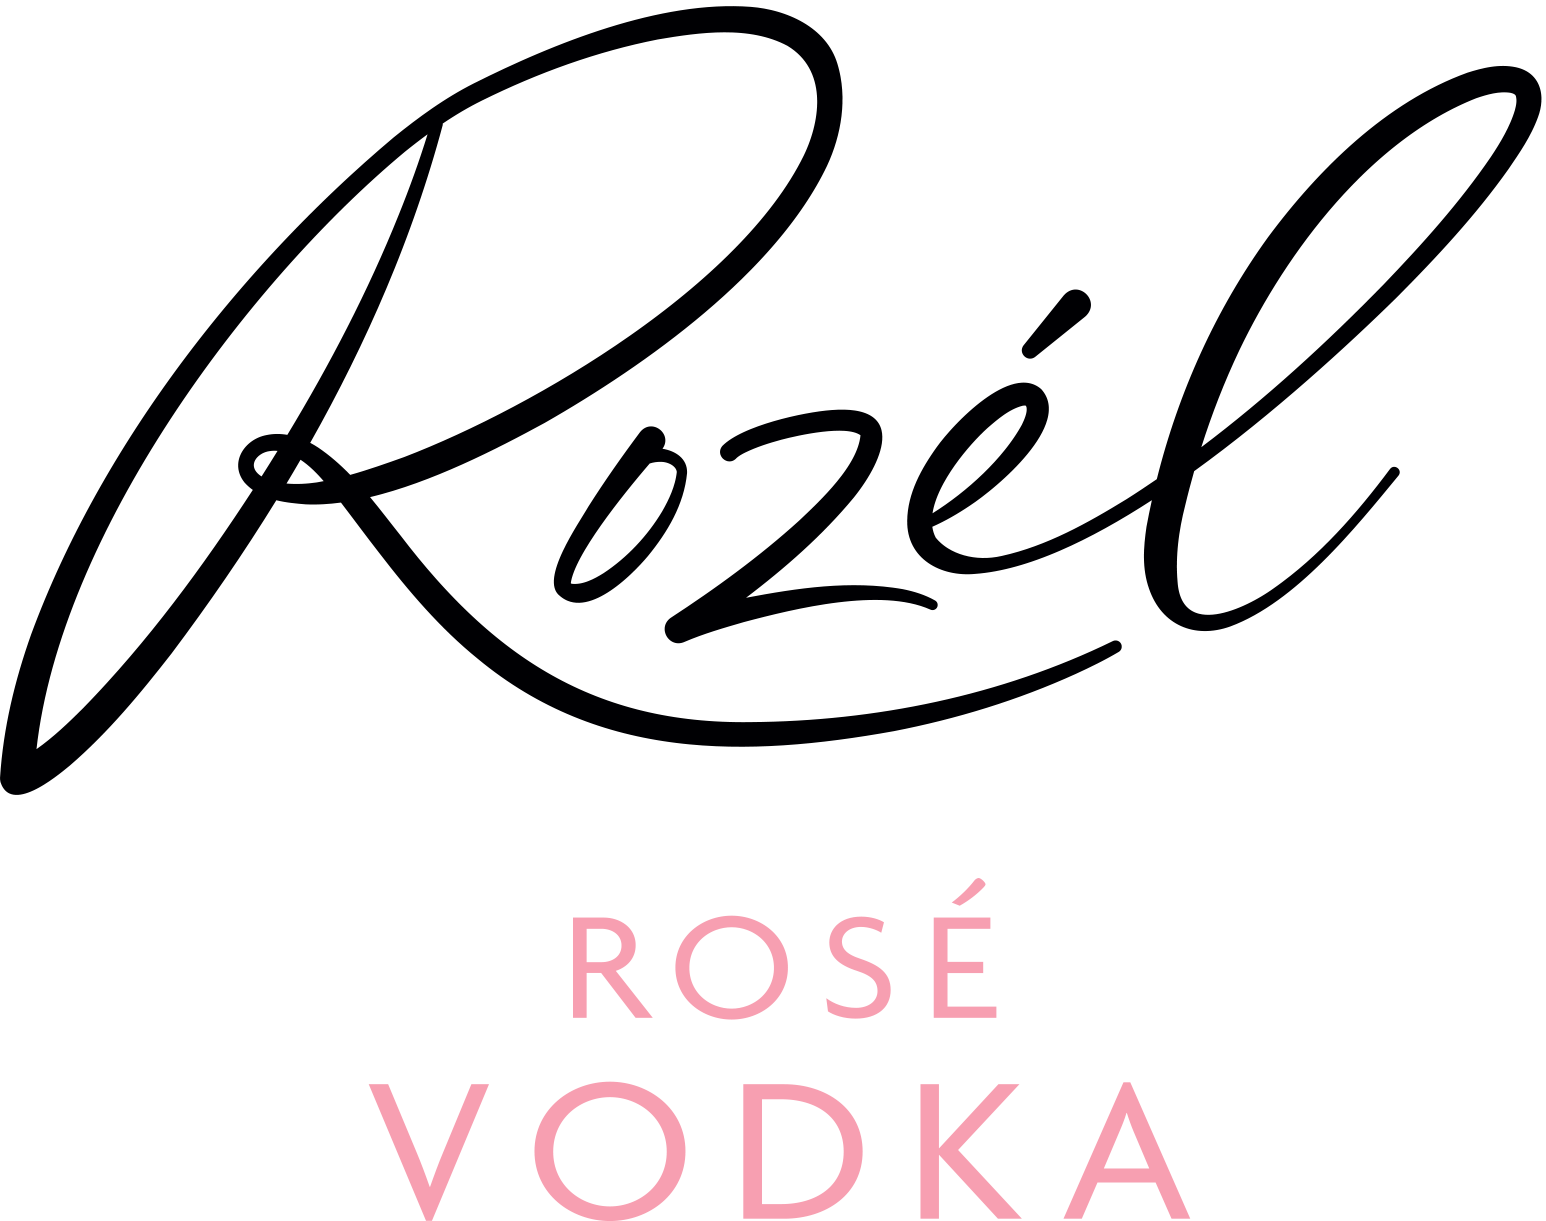 Rozel Logo Black And Pink